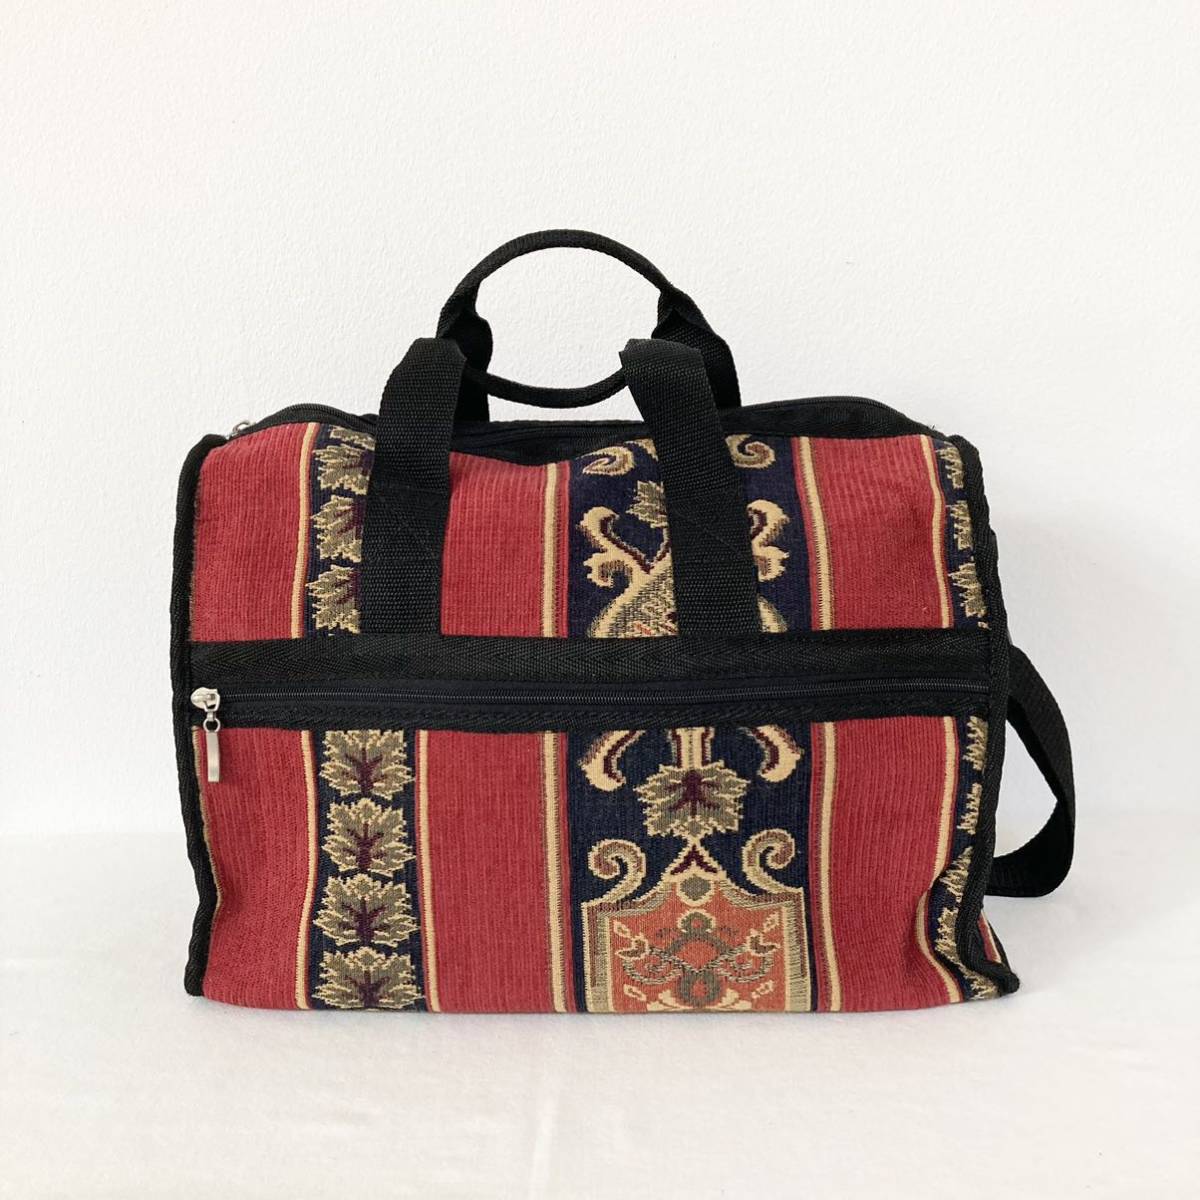  неиспользуемый   Бостон  сумка   плечо   идет в комплекте   ткань   ... ткань  подобно   дизайн   экзотичный  ... ... ...  красный   бежевый   черный  цвет   путешествие 